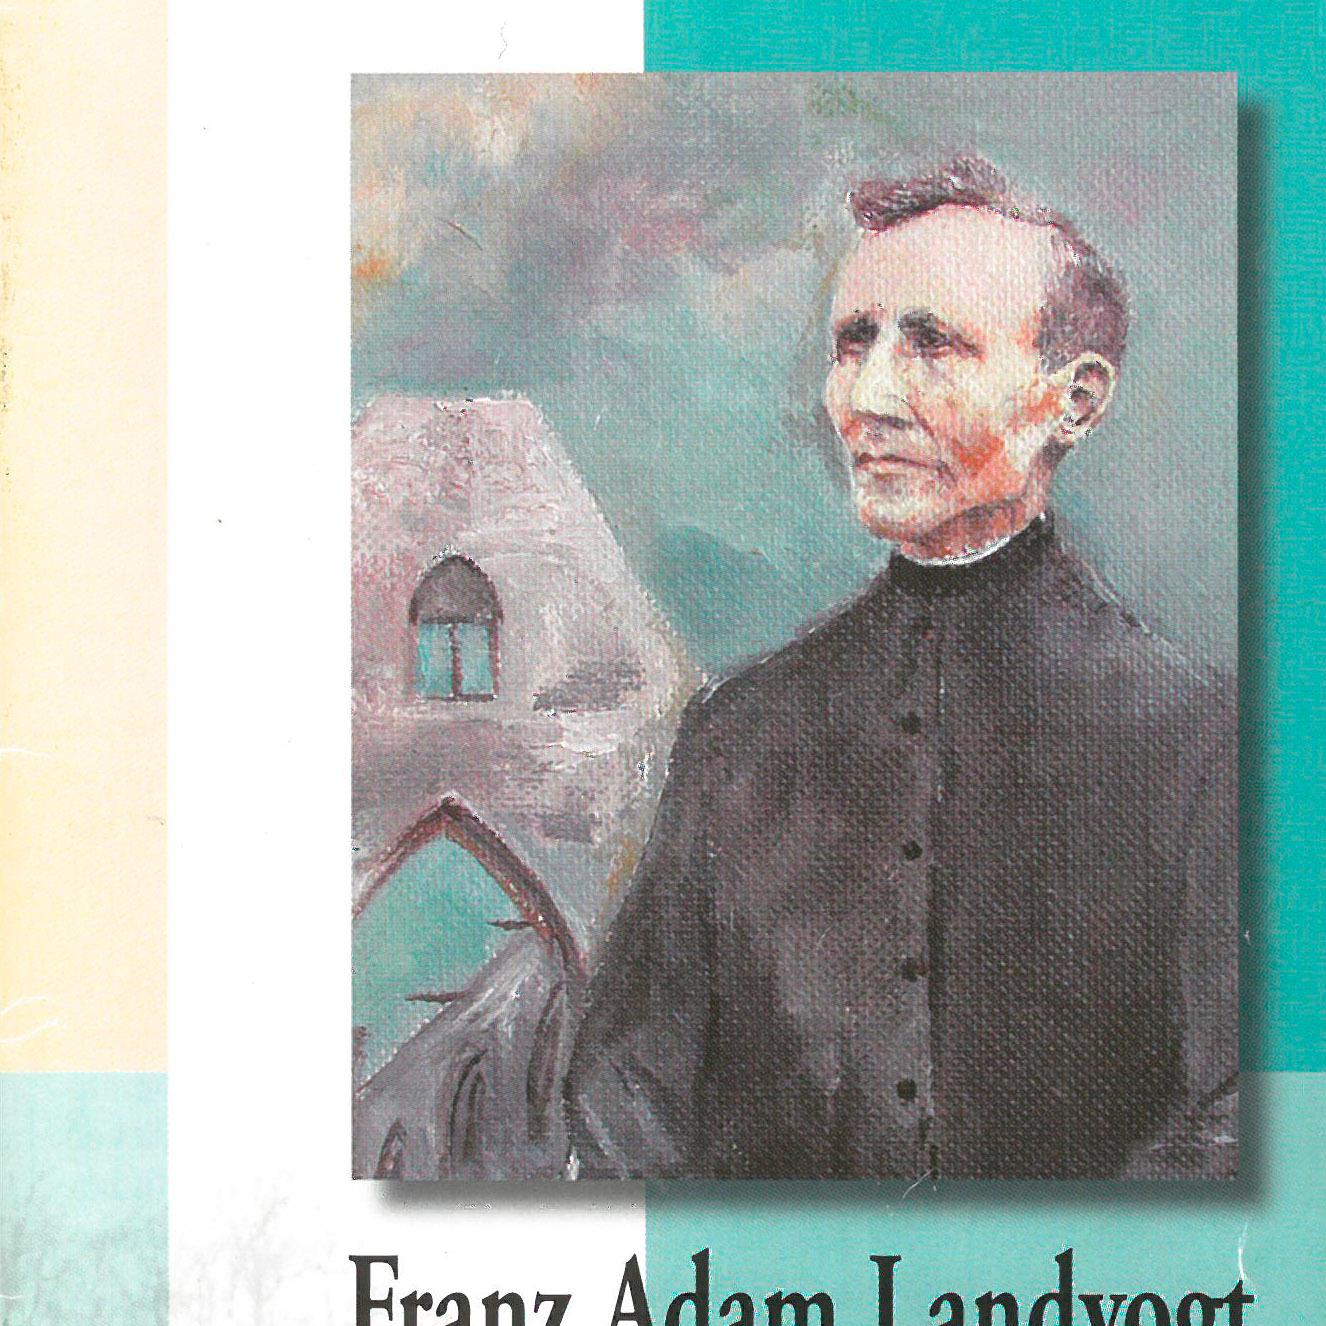 Franz Adam Landvogt